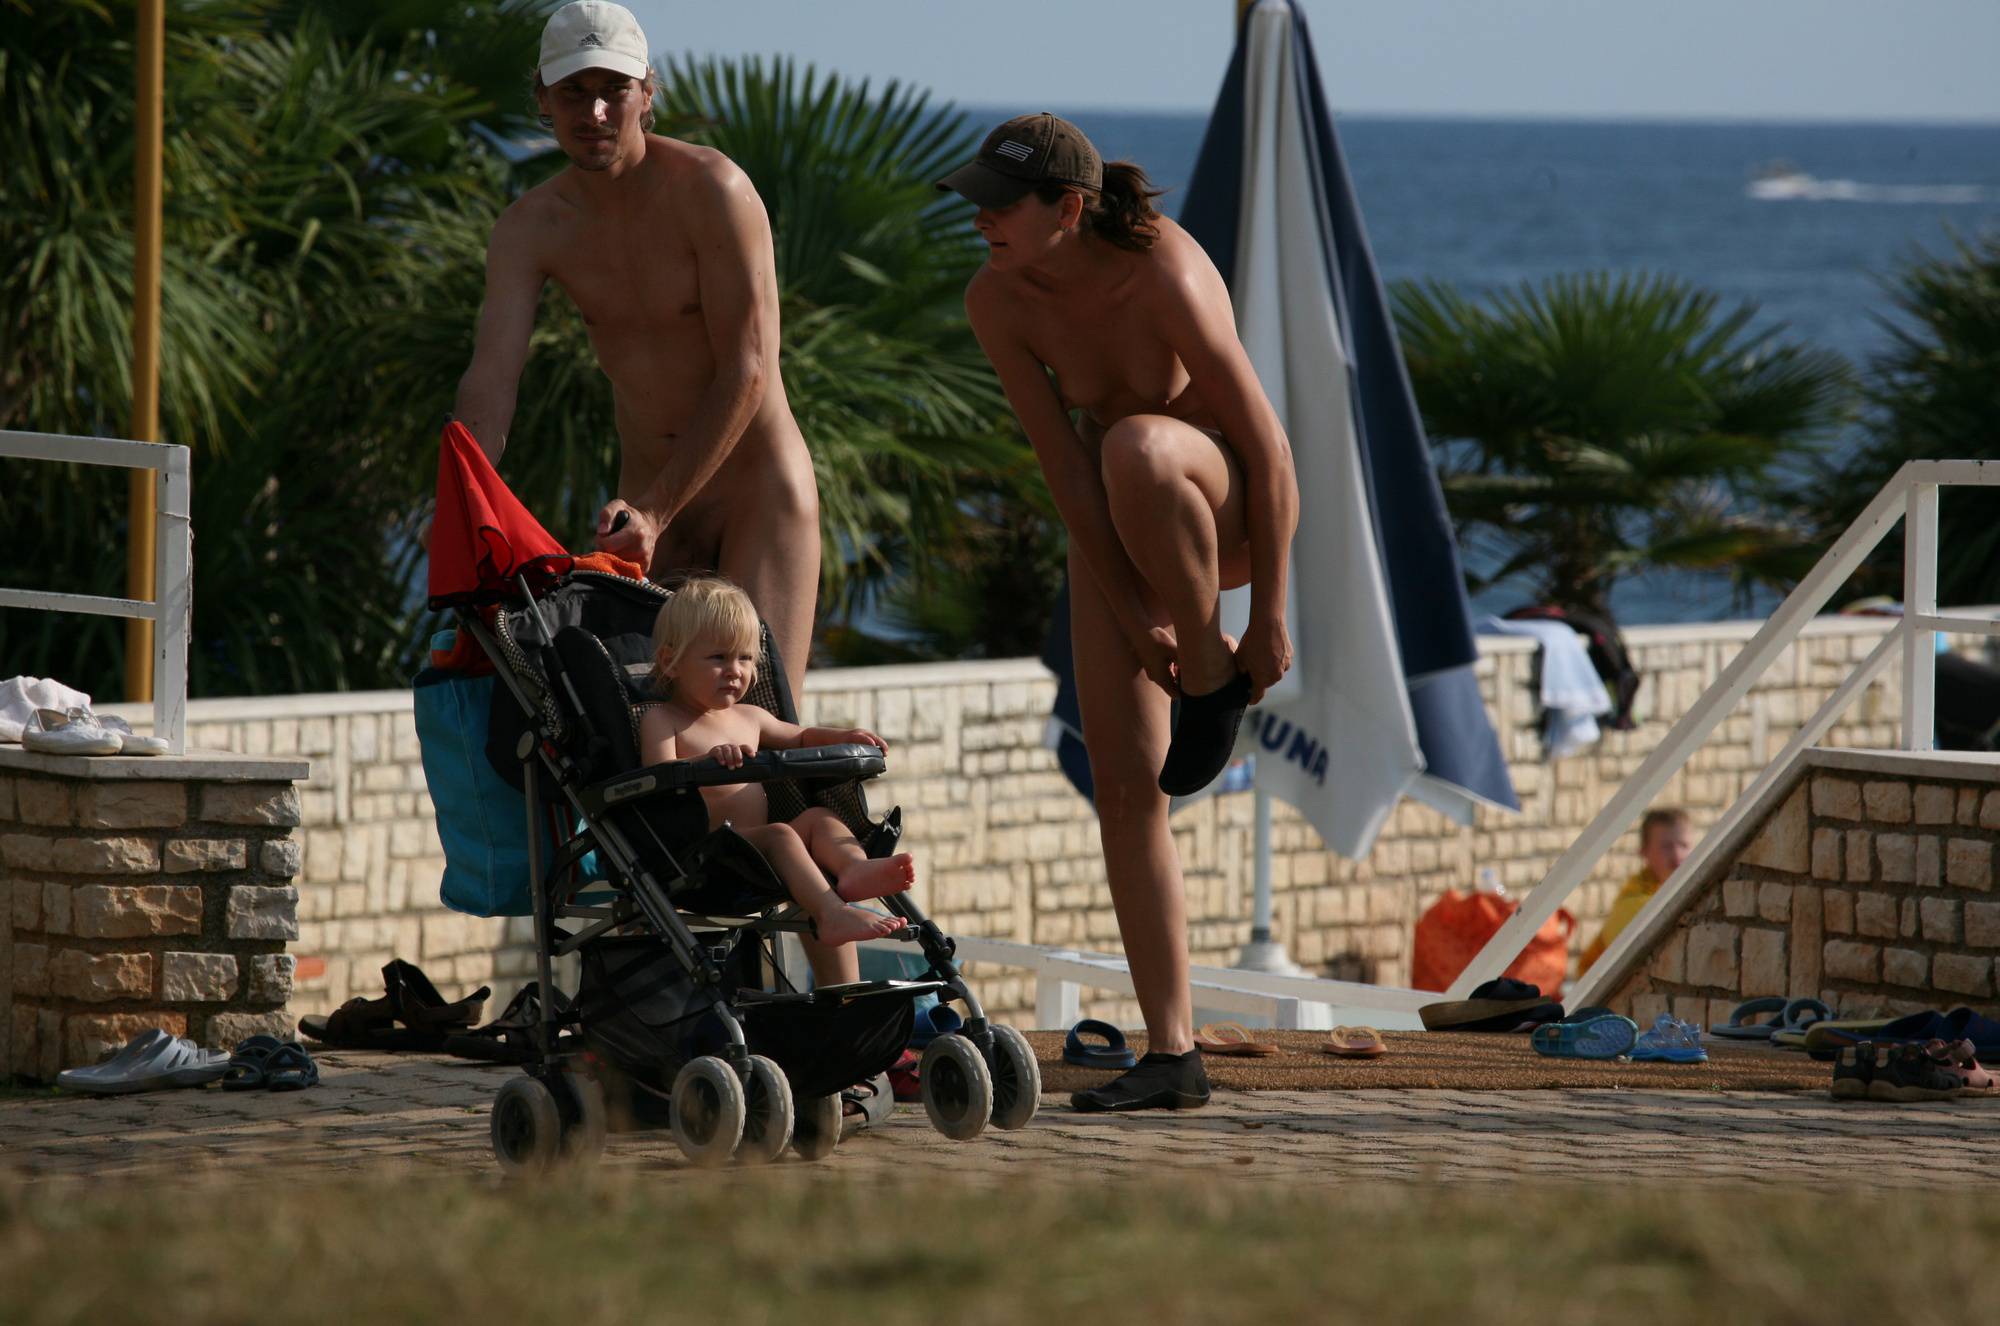 Purenudism Pics-Nuda Pool Close Parenting - 2